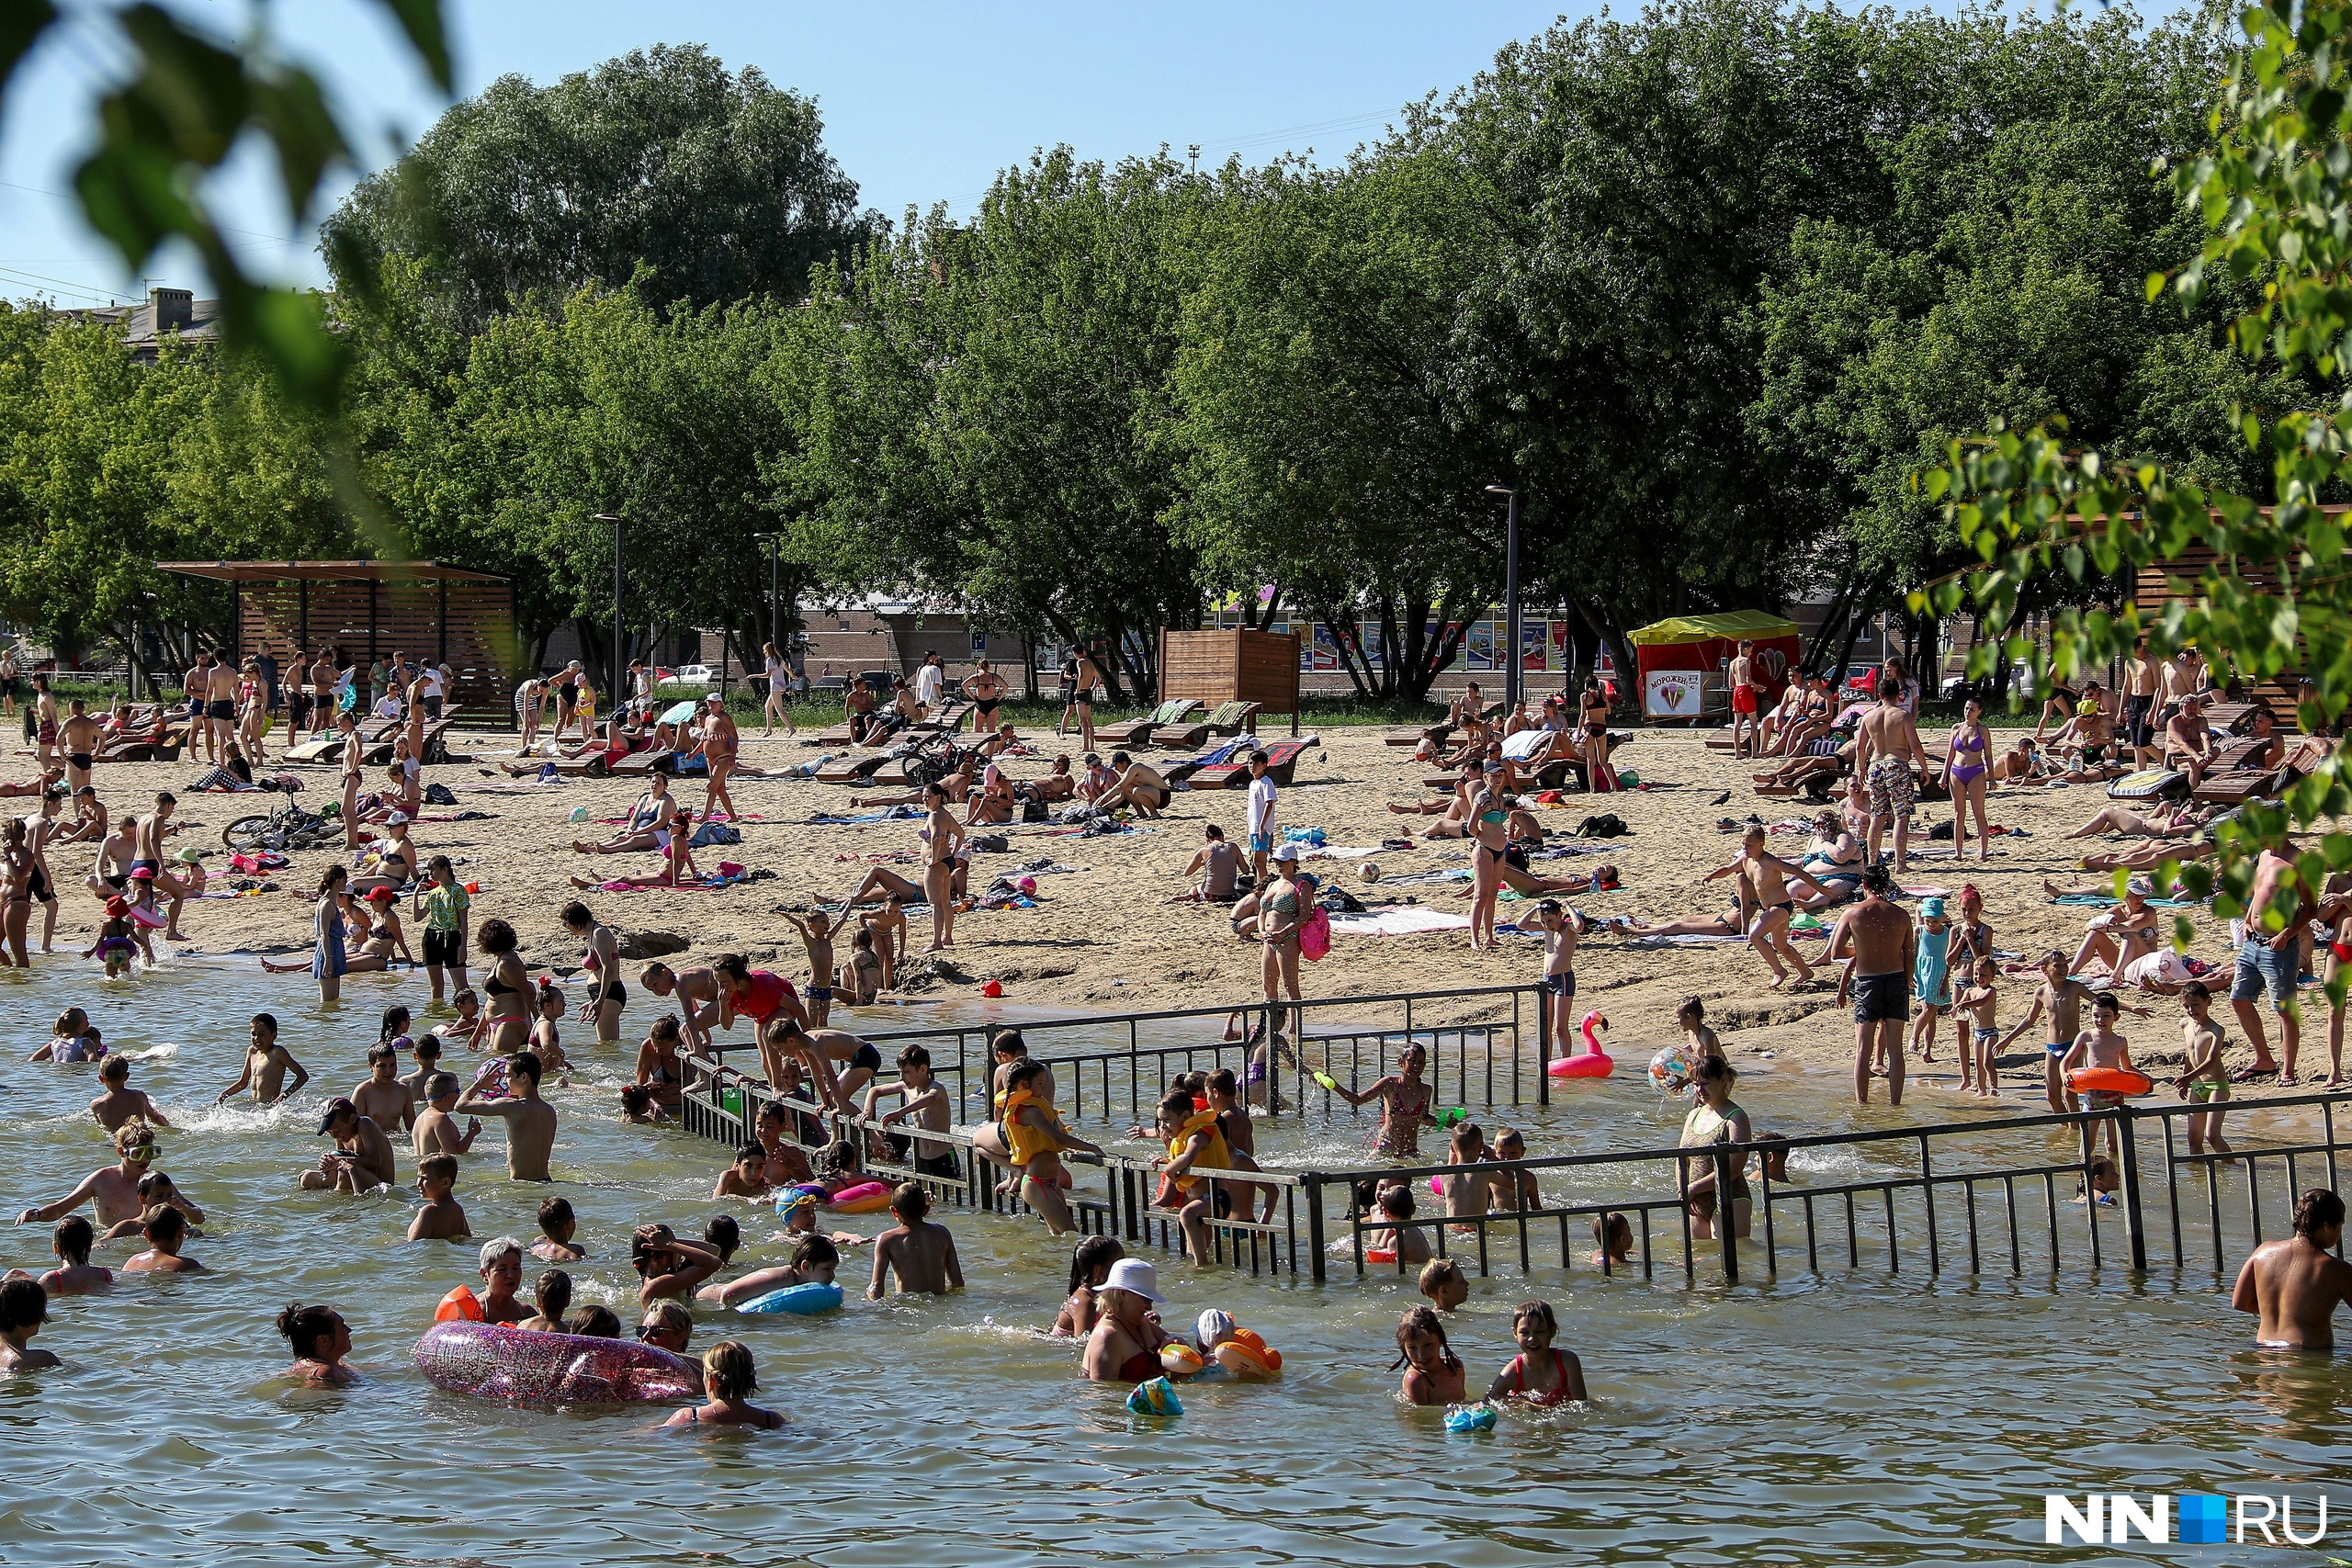 На пляже паркового озера есть специальный забор, огораживающий зону купания для детей